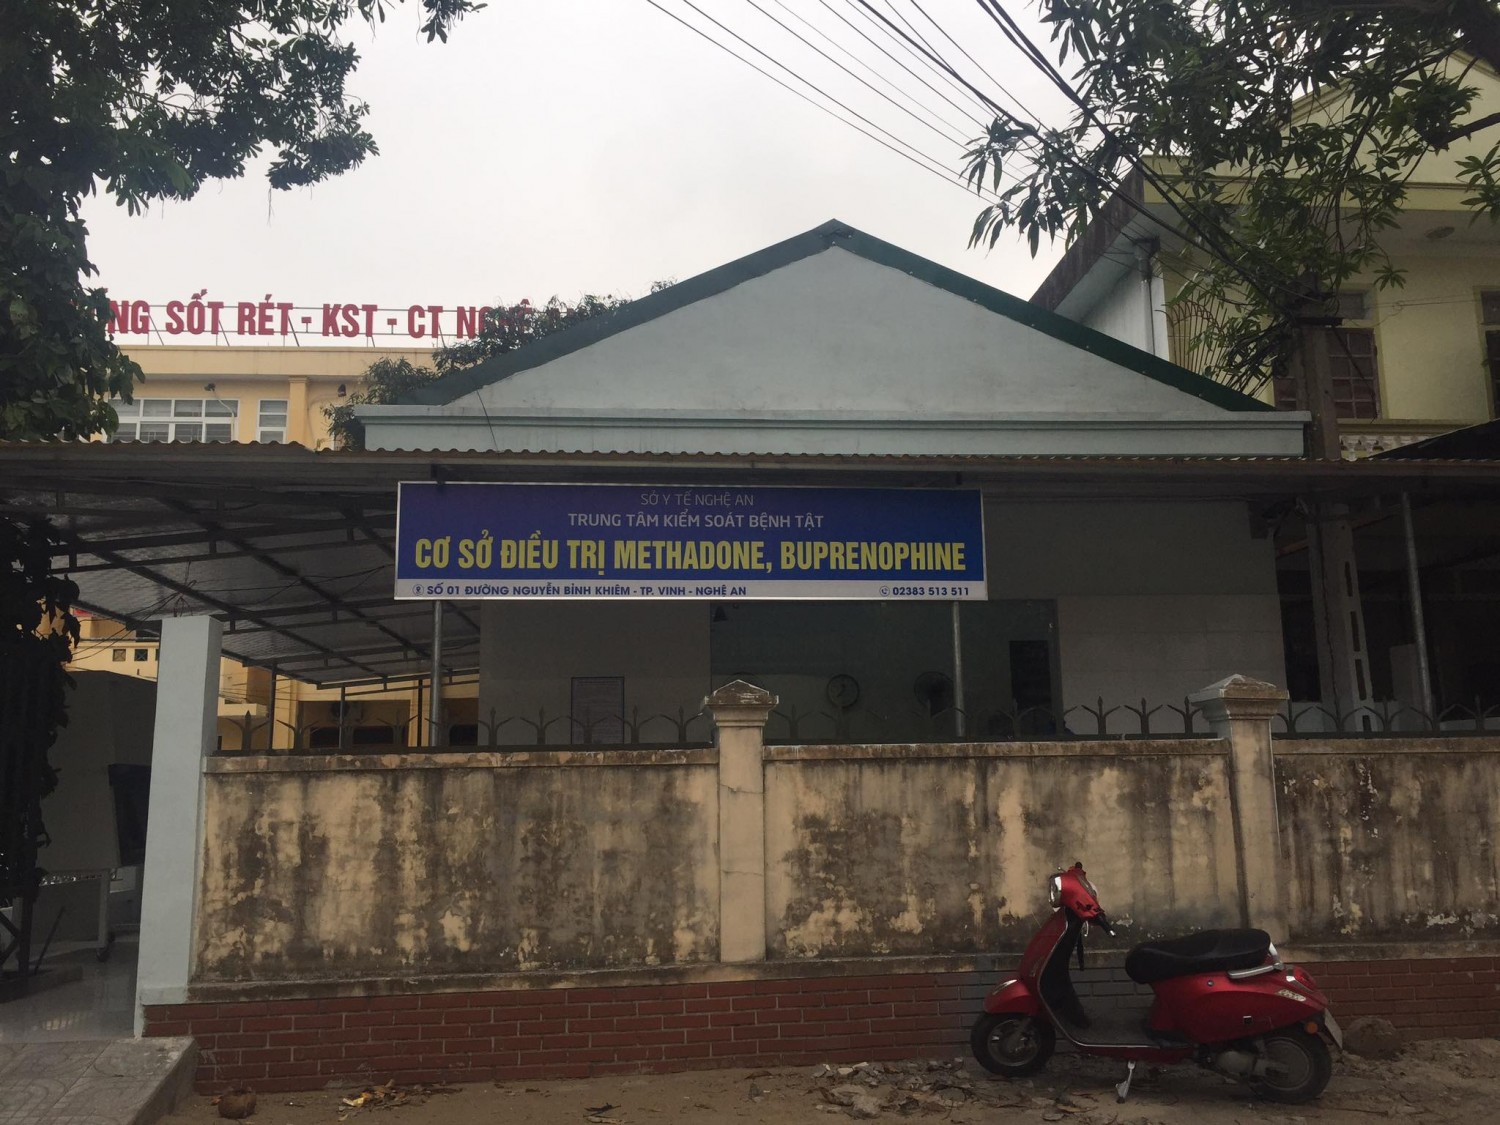 Cở sở điều trị Methadone Trung tâm kiểm soát bệnh tật tỉnh Nghệ An